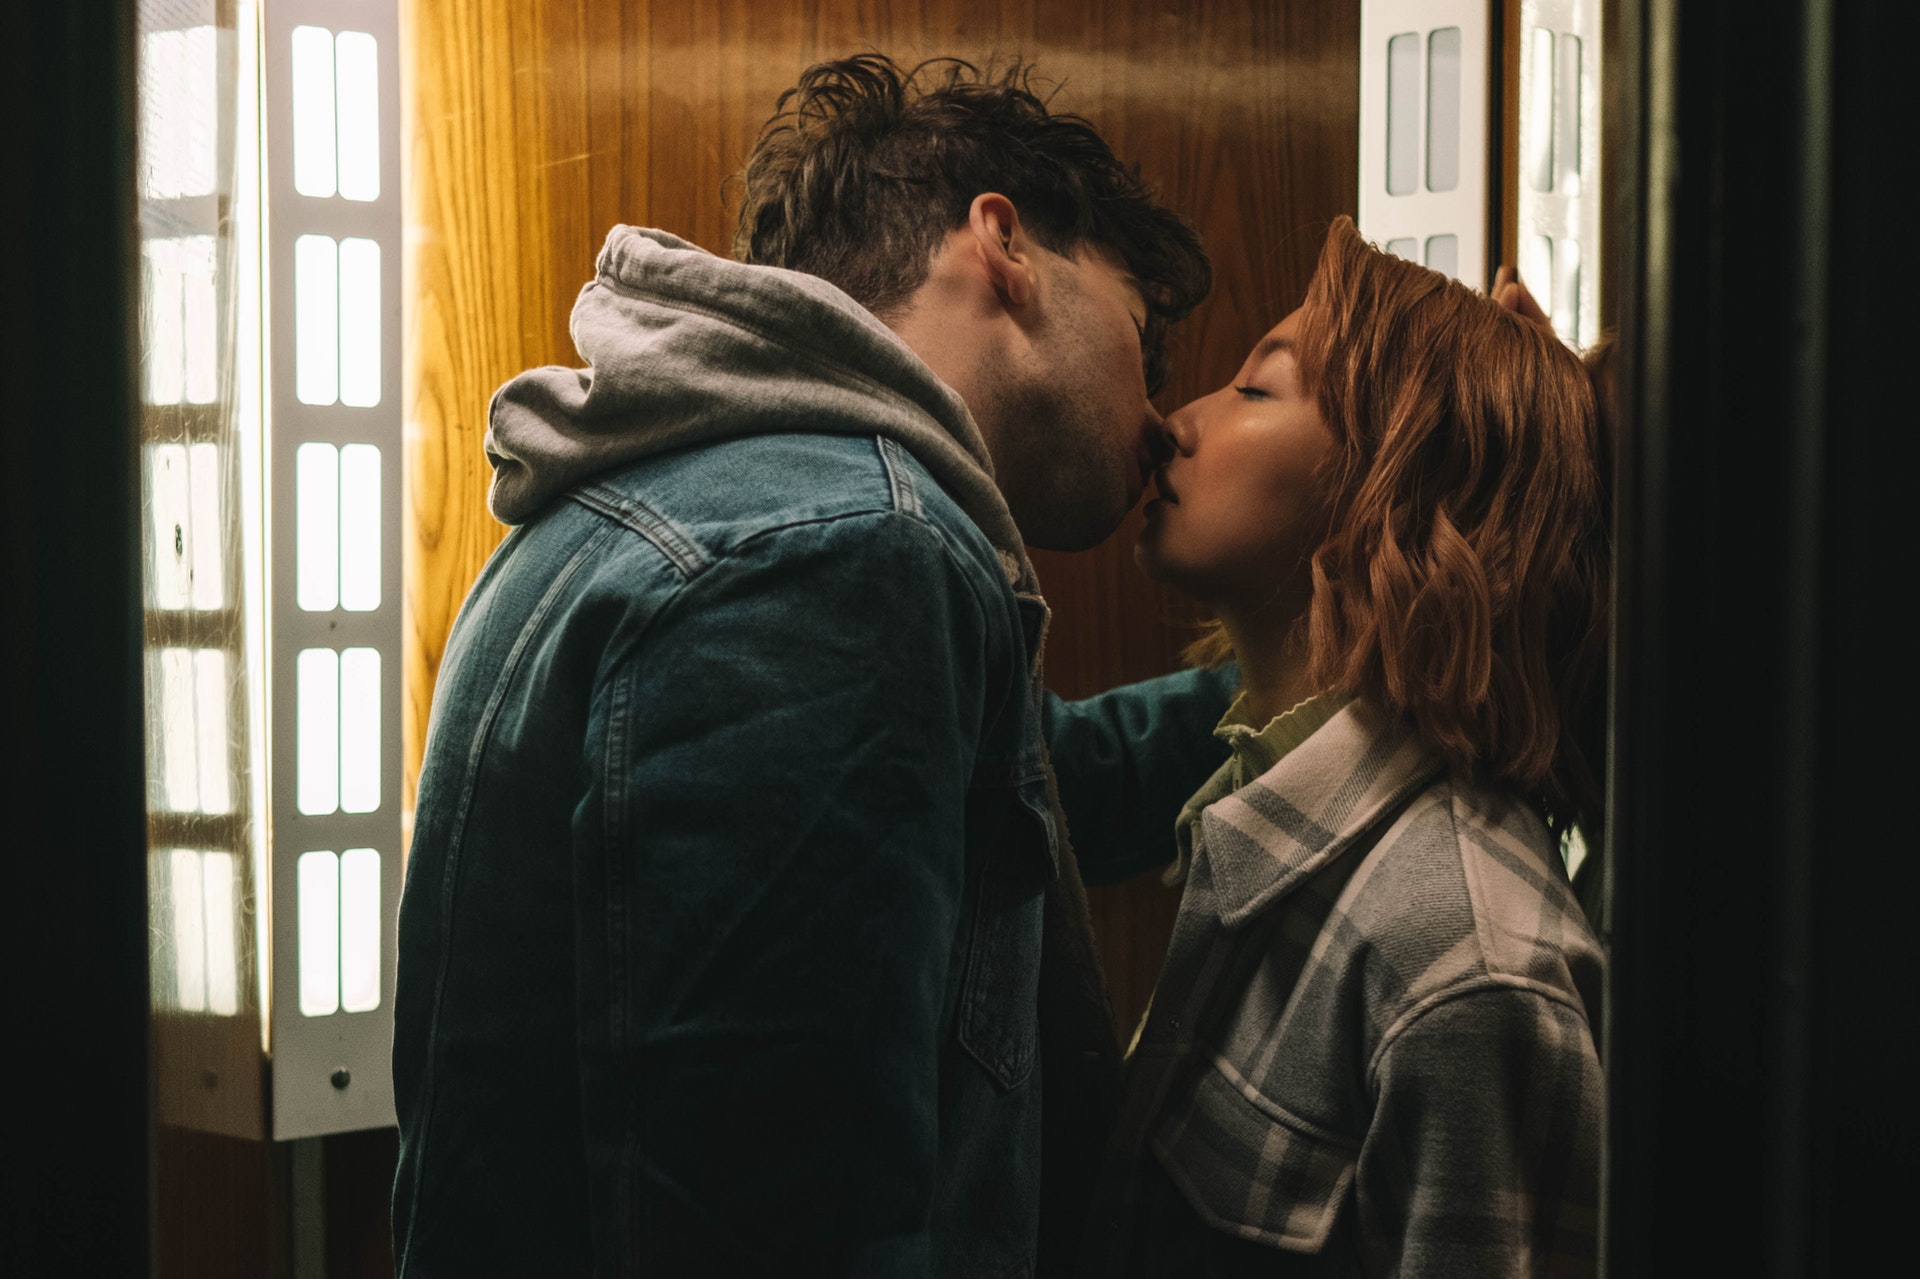 Frau und Mann küssen sich. Bild: Pexels